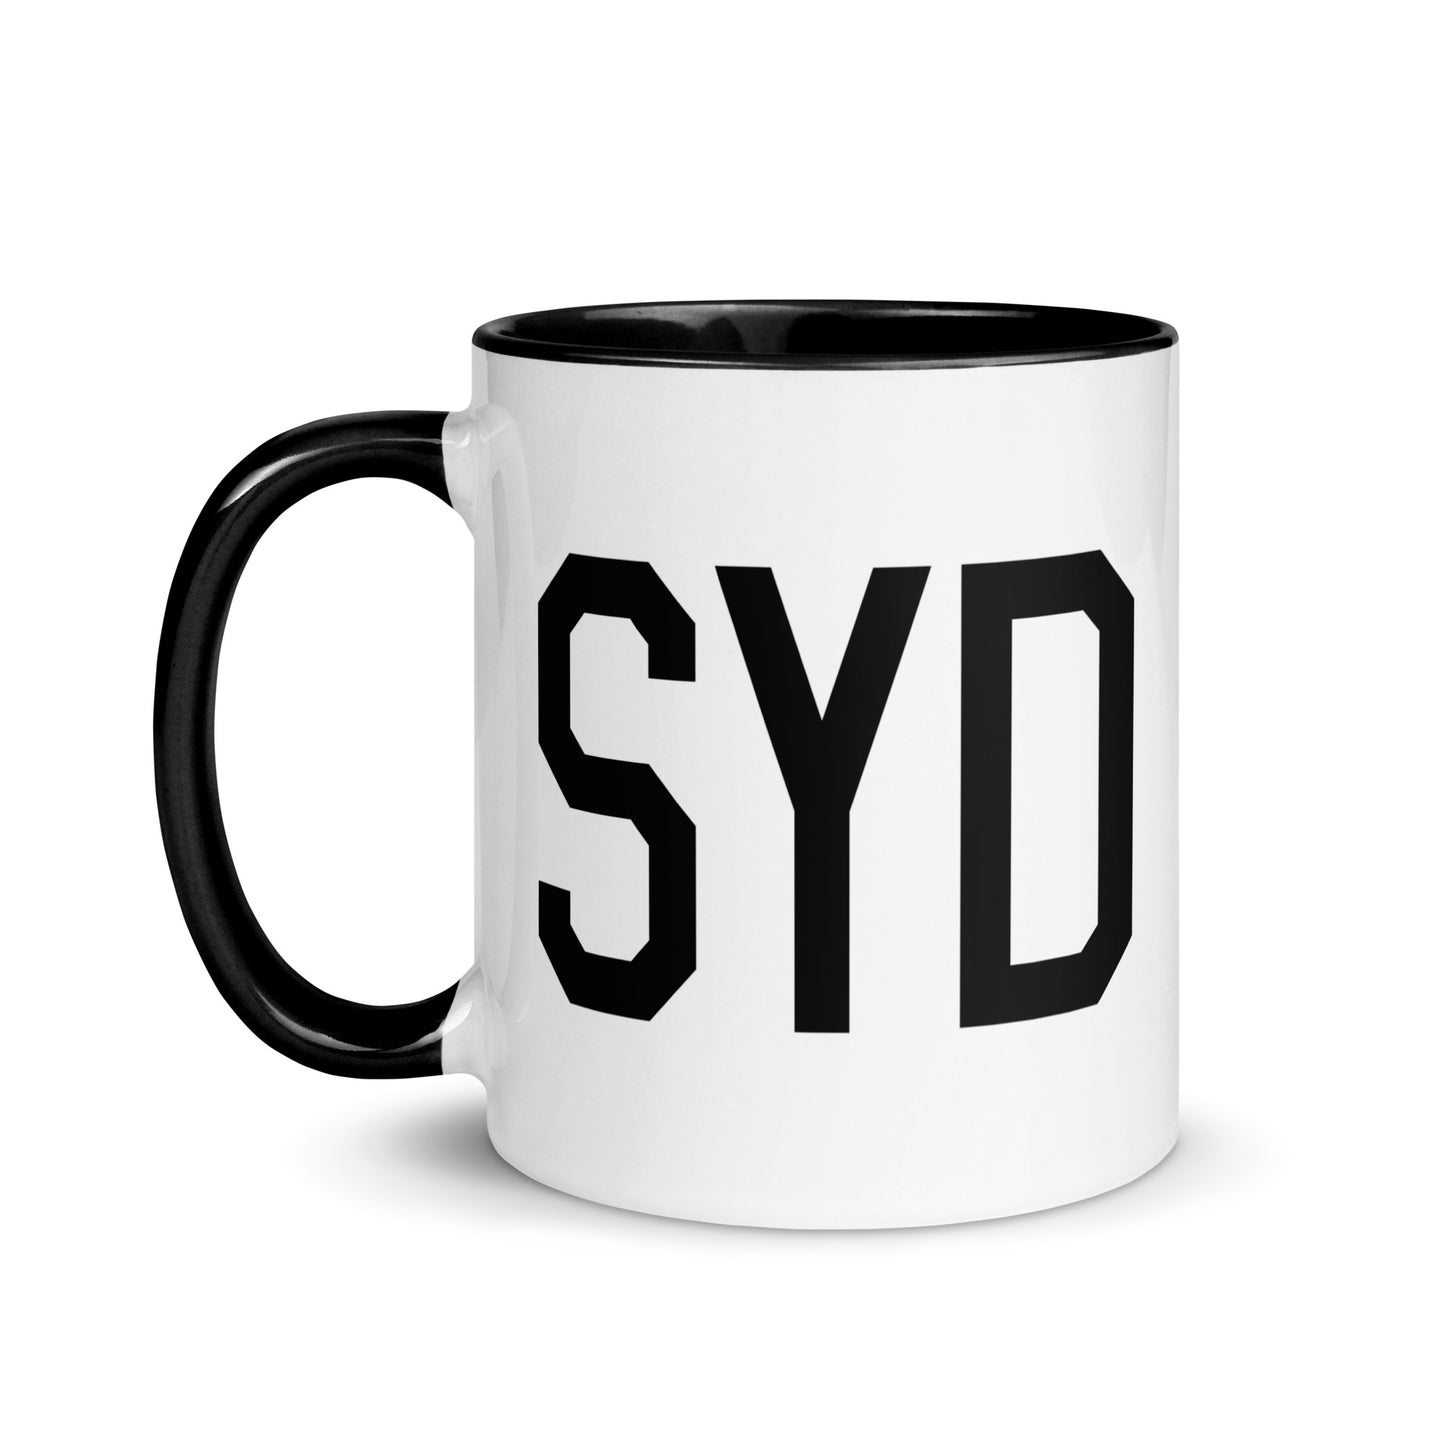 Aviation-Theme Coffee Mug - Black • SYD Sydney • YHM Designs - Image 03